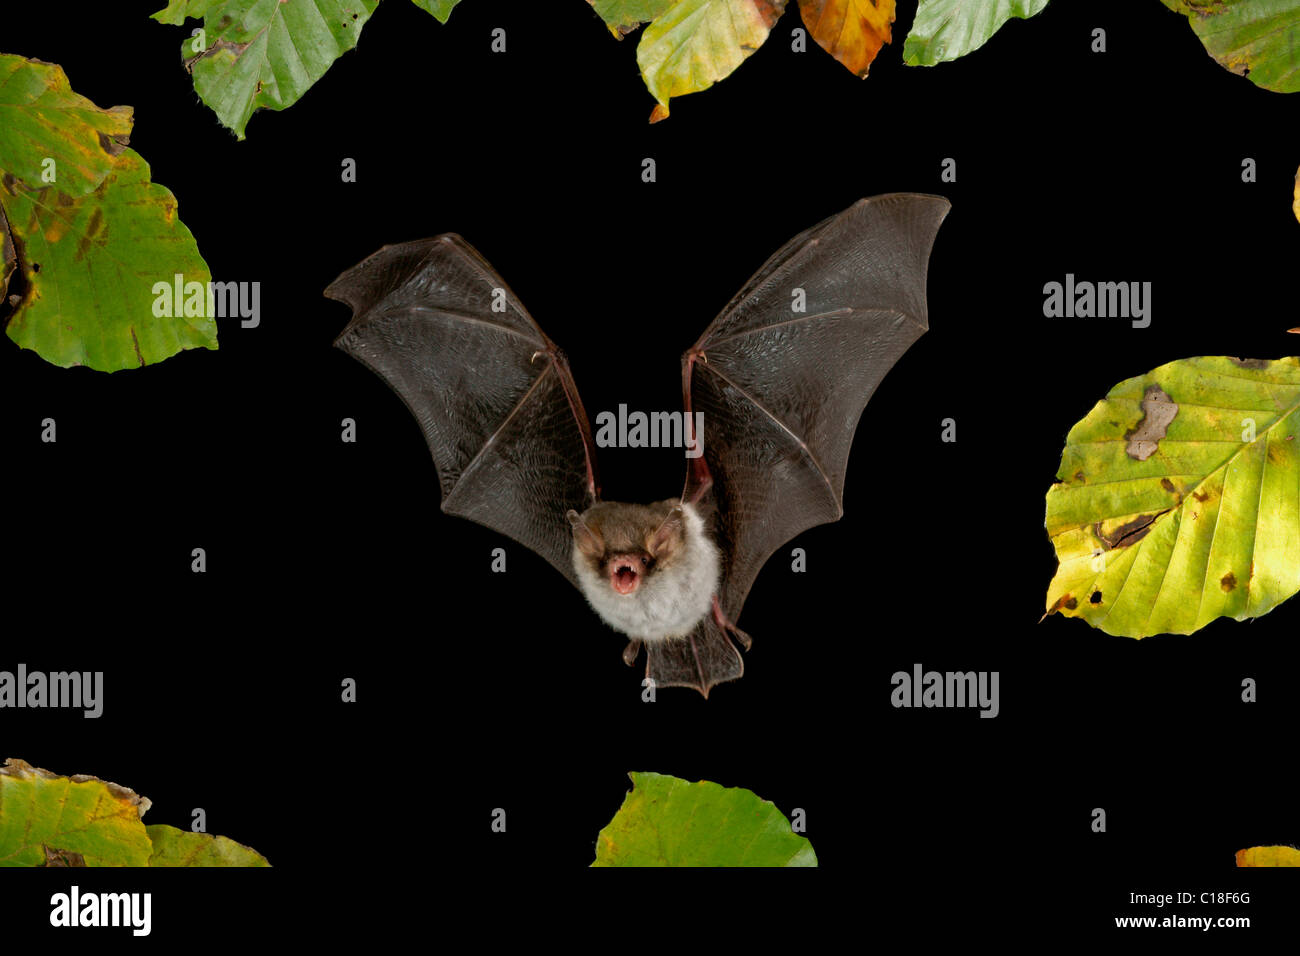 Natterer's Bat (Myotis nattereri) in flight Stock Photo